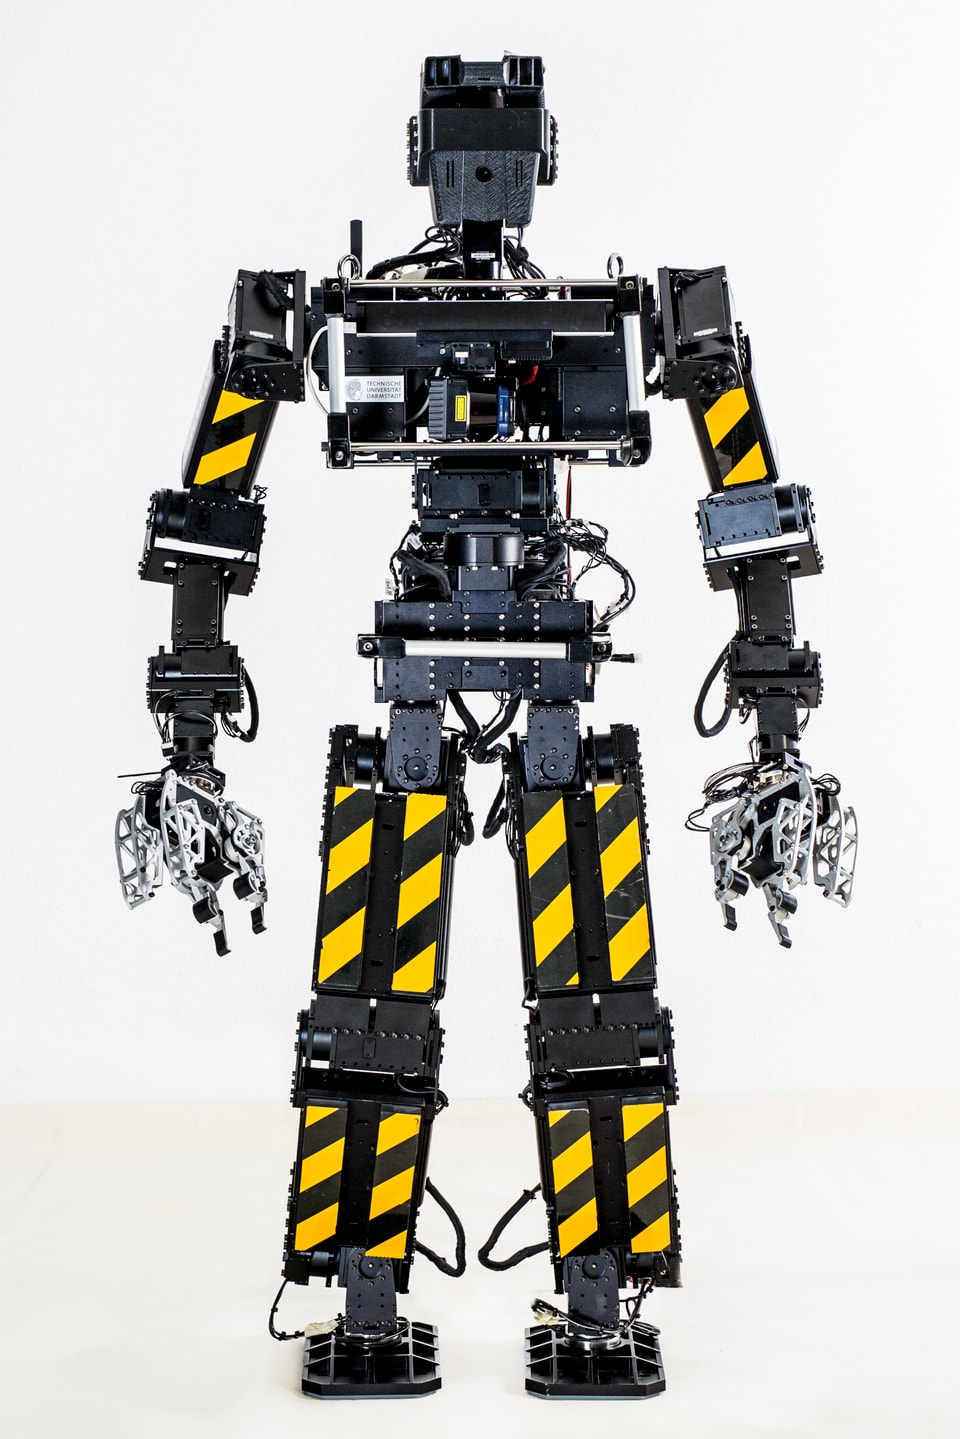 Ein menschenähnlicher Roboter mit Armen und Beinen, auf denen gelbe Streifen angebracht sind.